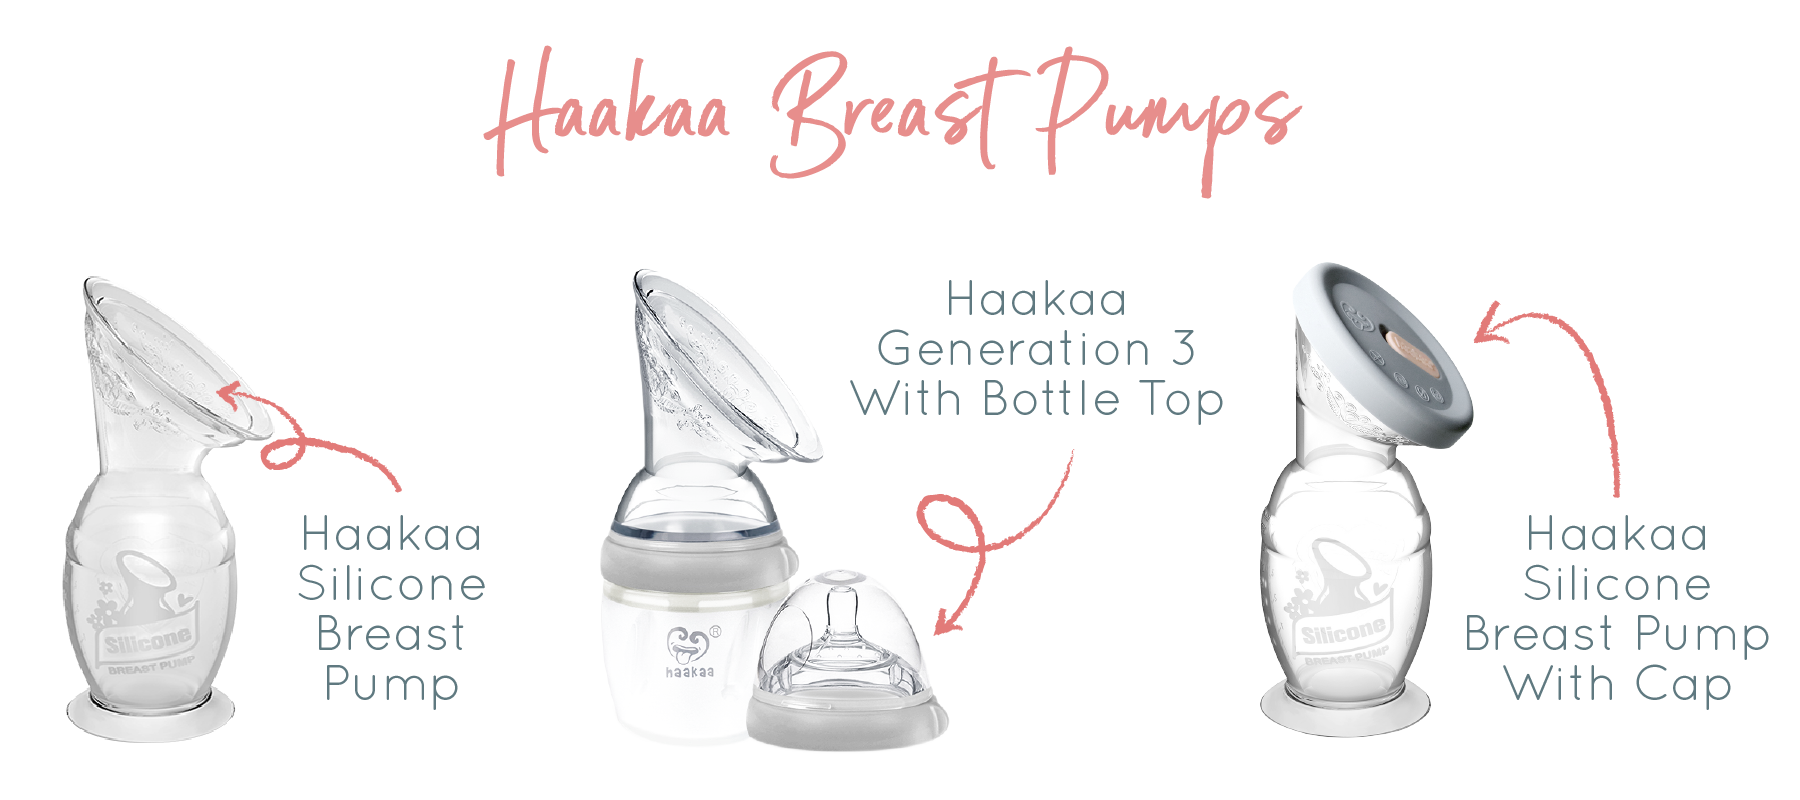 Haakaa Breast Pumps